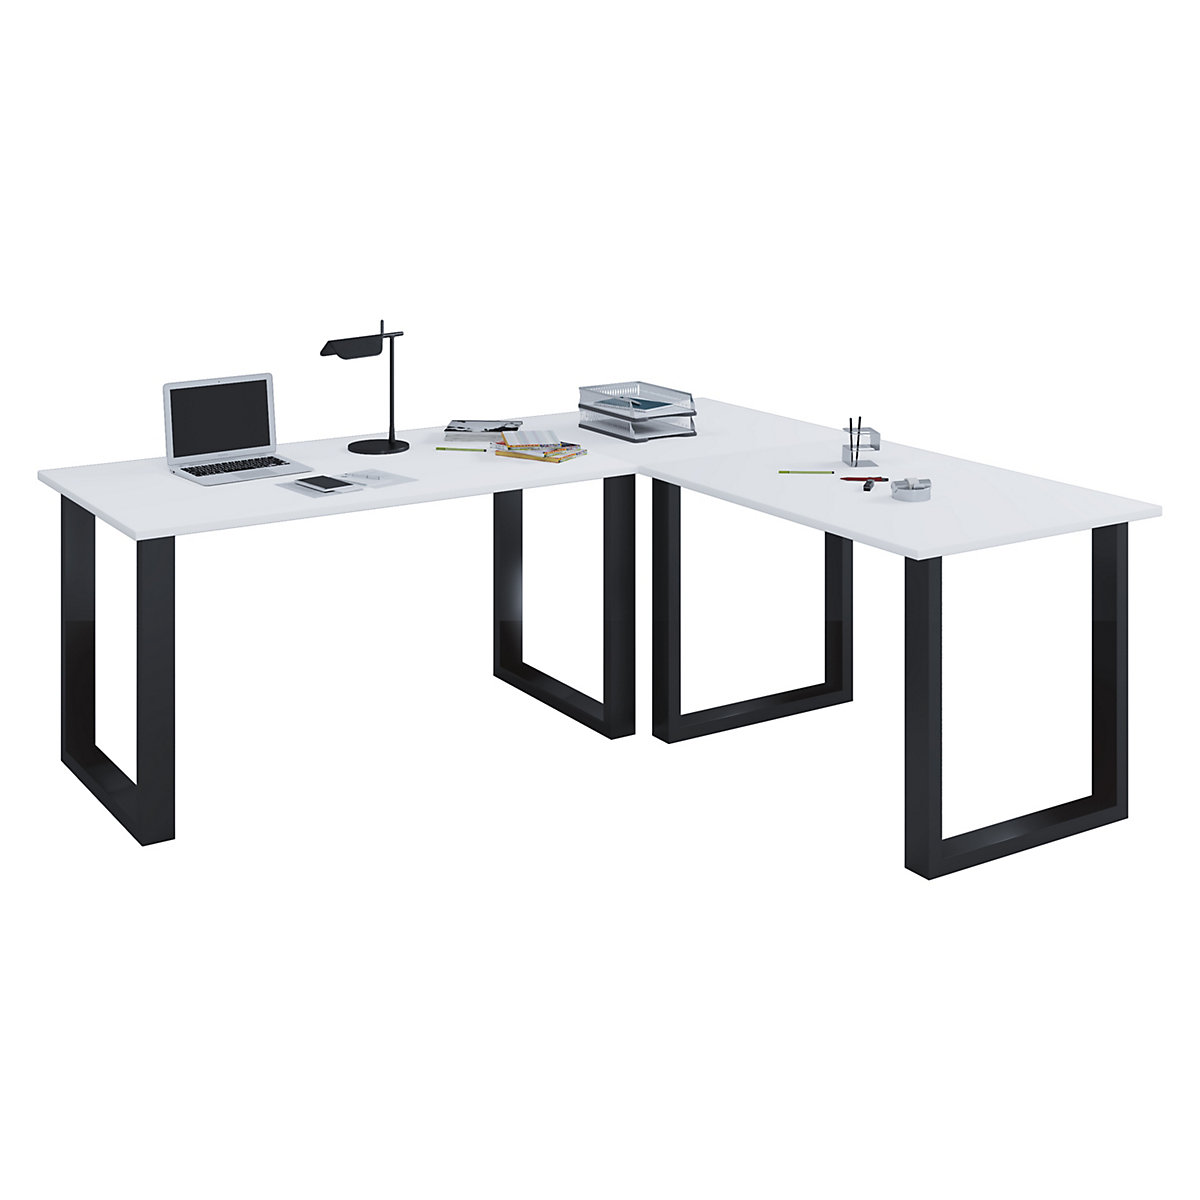 VCM Eckschreibtisch Schreibtisch Büromöbel Computertisch Winkeltisch Tisch Büro Lona 130 x 130 x 50 cm